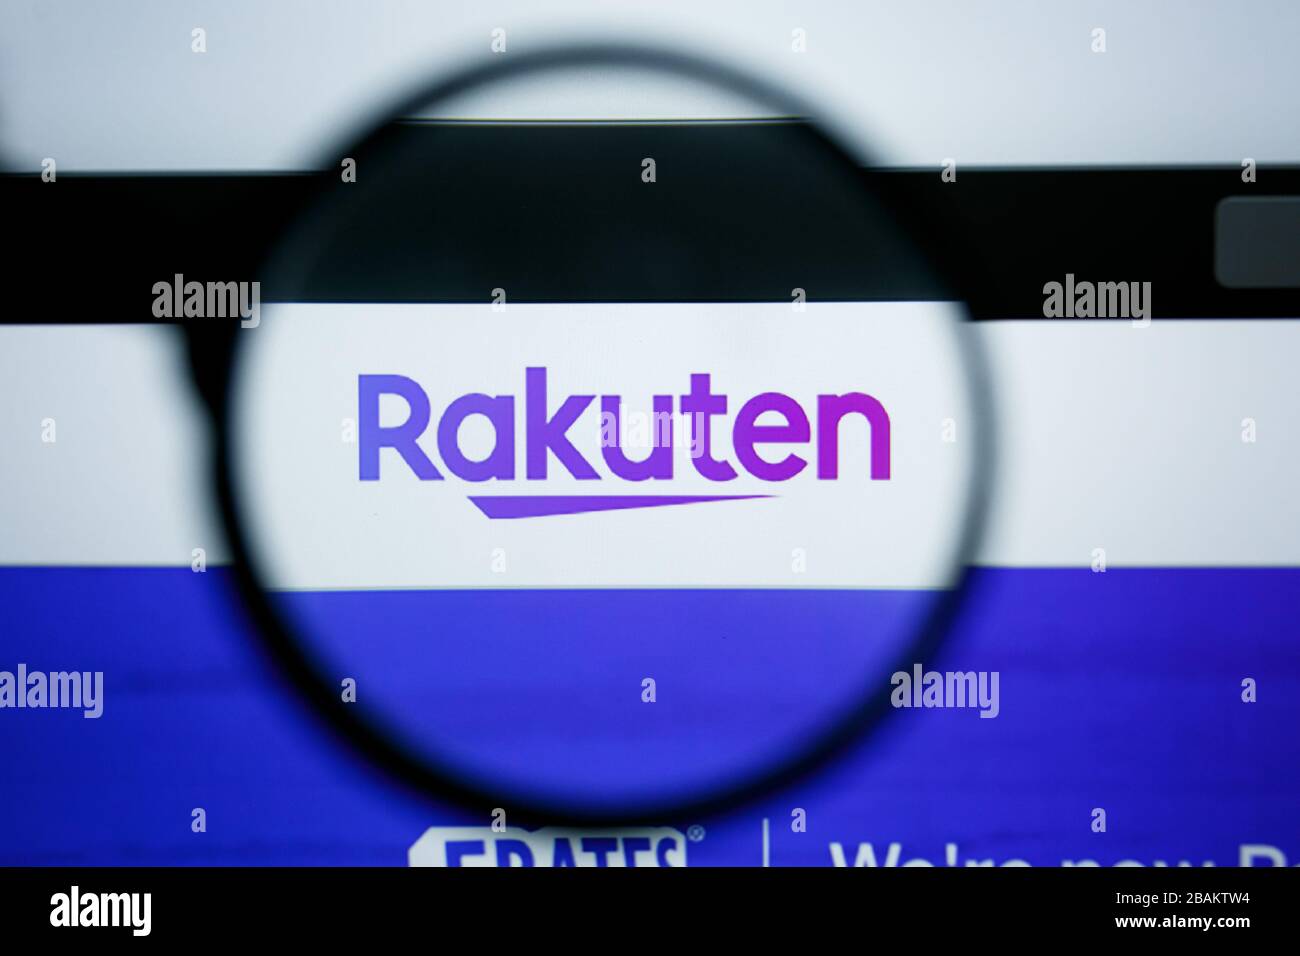 Los Angeles, California, USA - 25 Giugno 2019: Editoriale illustrativo della homepage del sito web di Rakuten. Logo Rakuten visibile sullo schermo del display Foto Stock